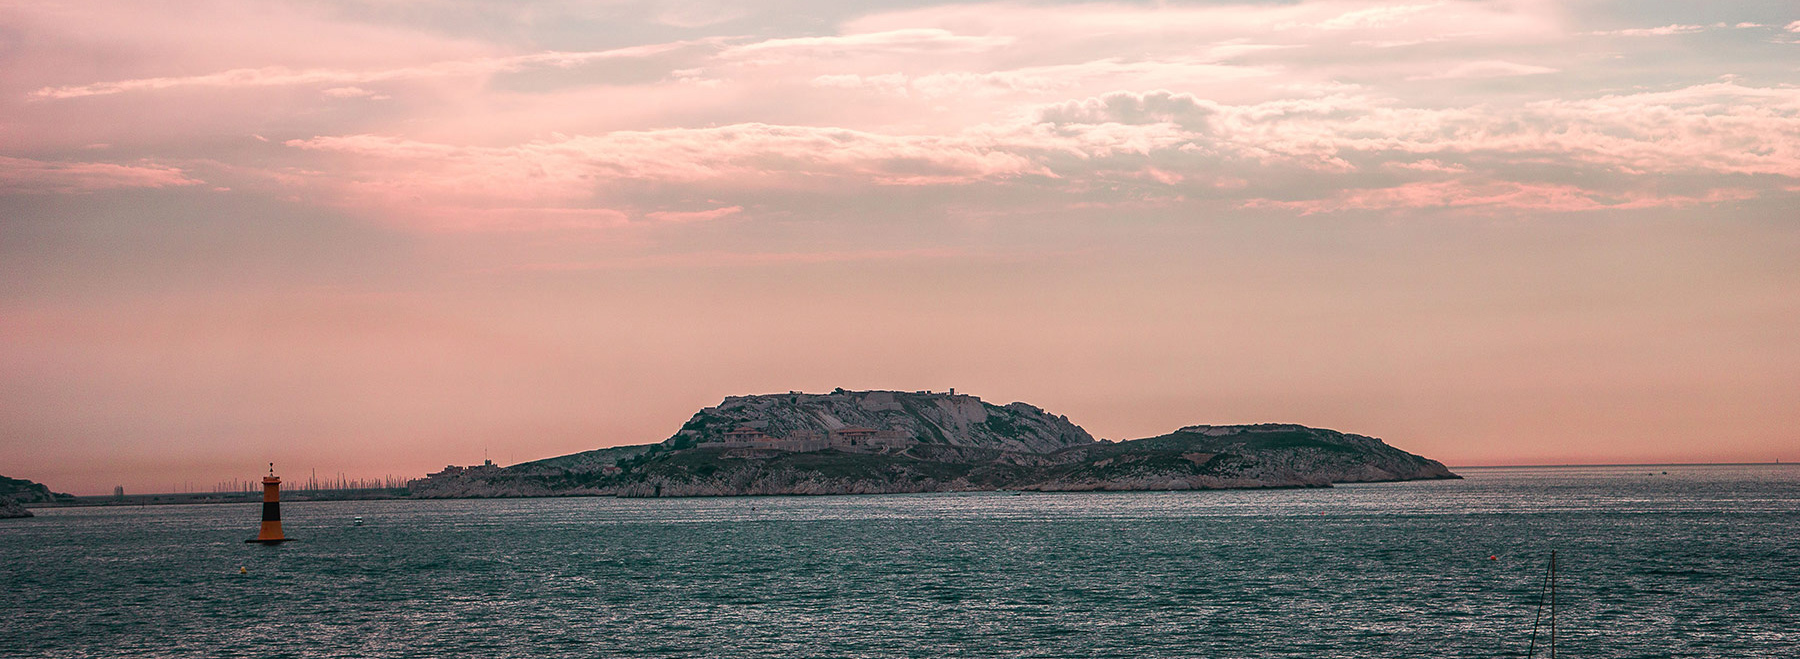 Oh il mare, bellissima foto delle isole Frioul al largo di Marsiglia, città a cui Stėfāno è molto legato